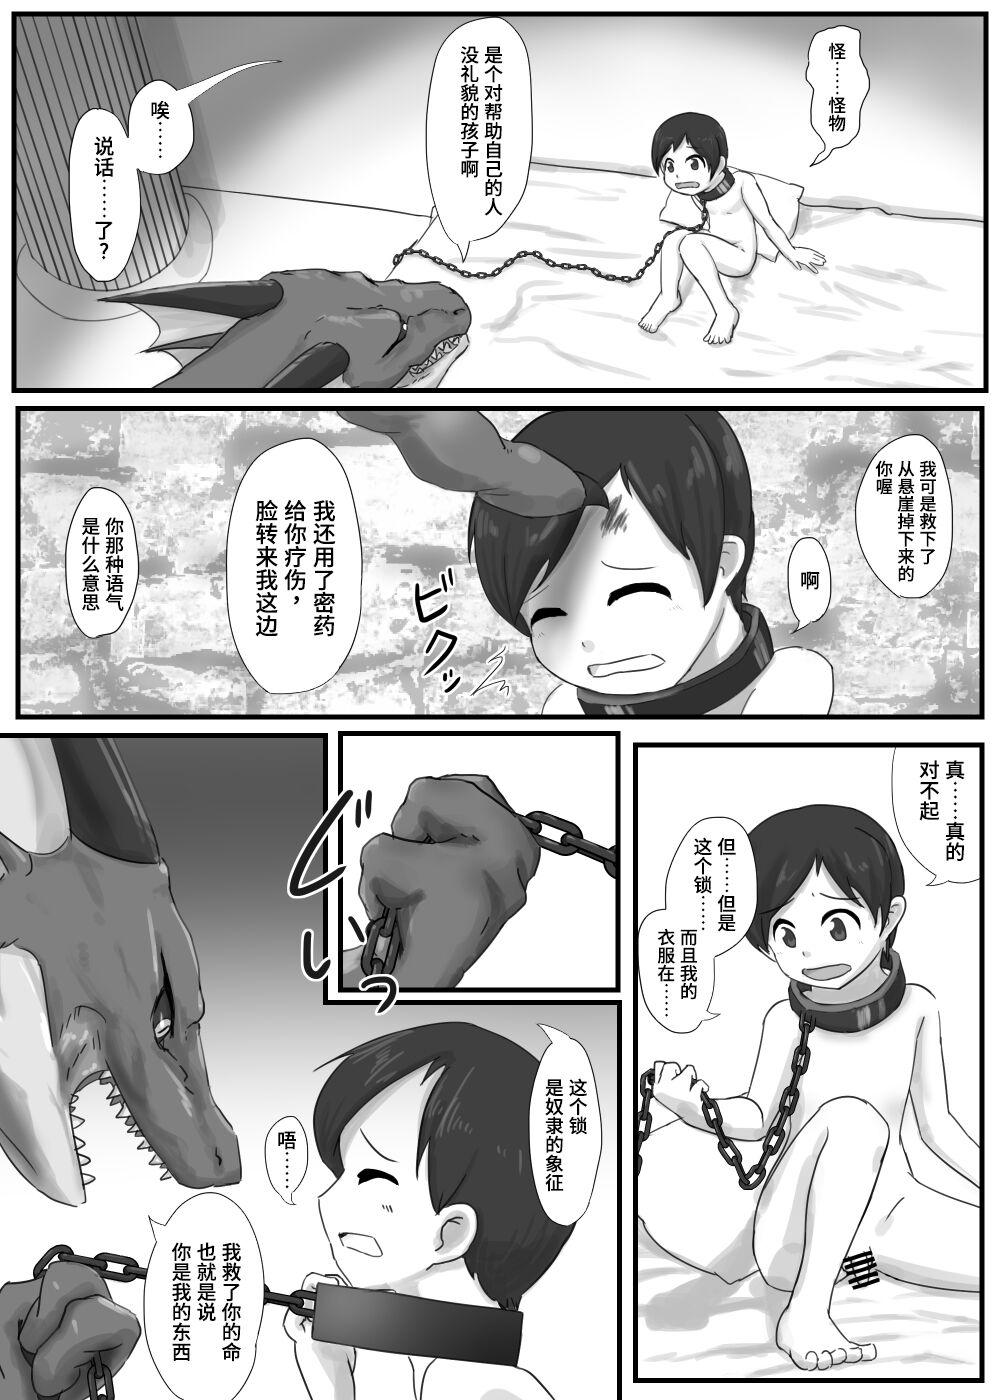 Gaping Dragon no Shita no Kuchi - Original Little - Page 5